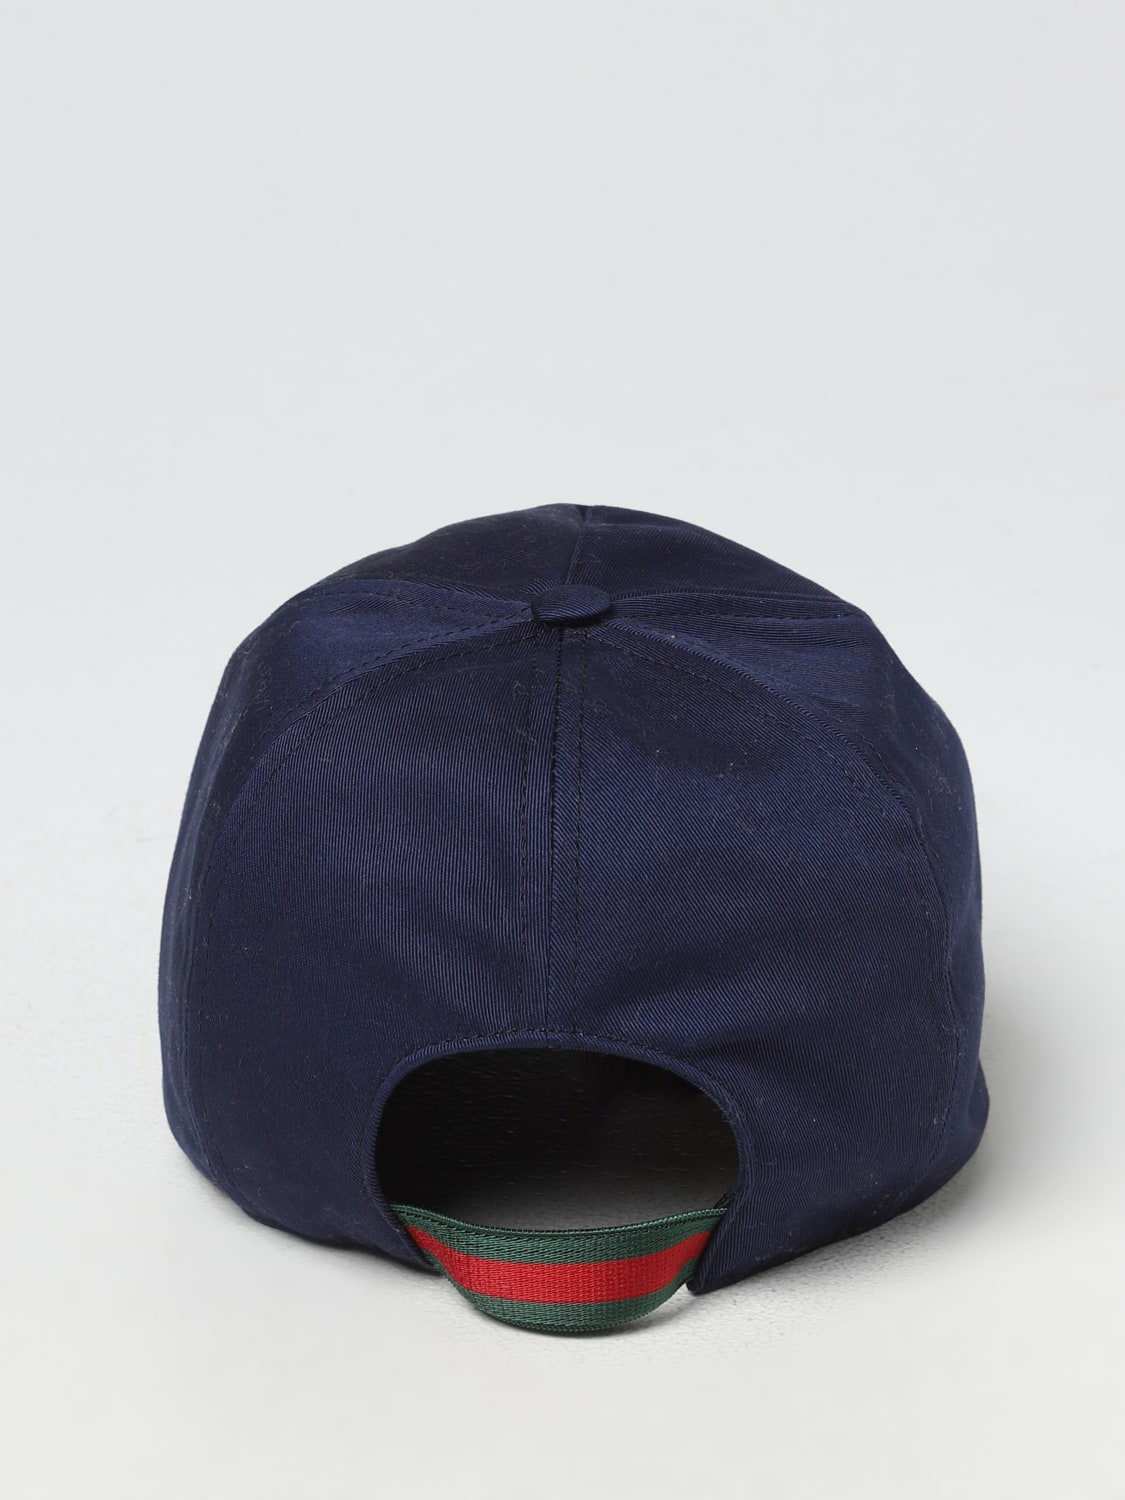 GUCCI： 帽子儿童- 蓝色| Gucci 帽子753444J3HAUC 在线就在GIGLIO.COM